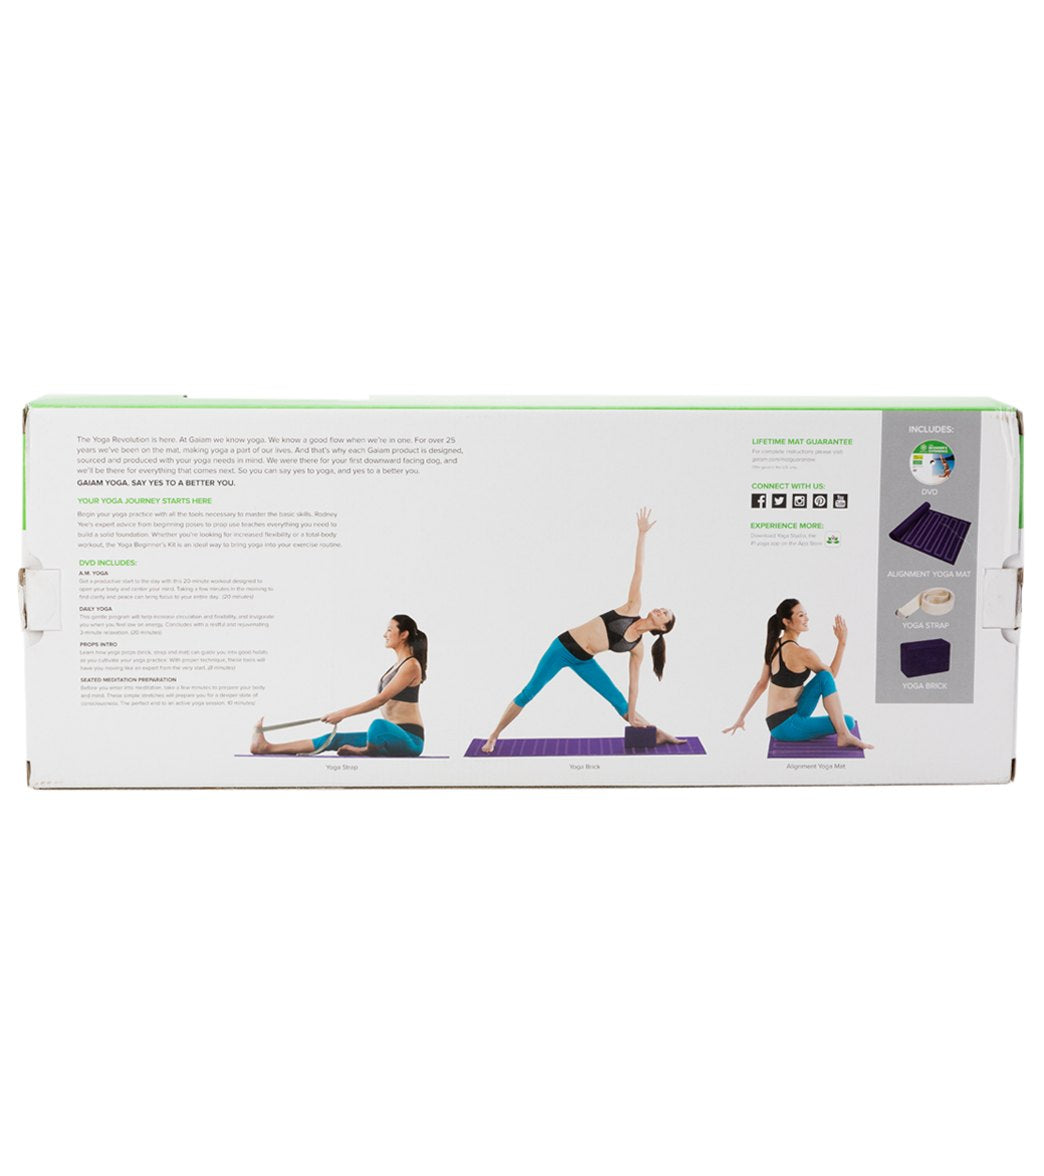 Gaiam Yoga Beginners Kit at